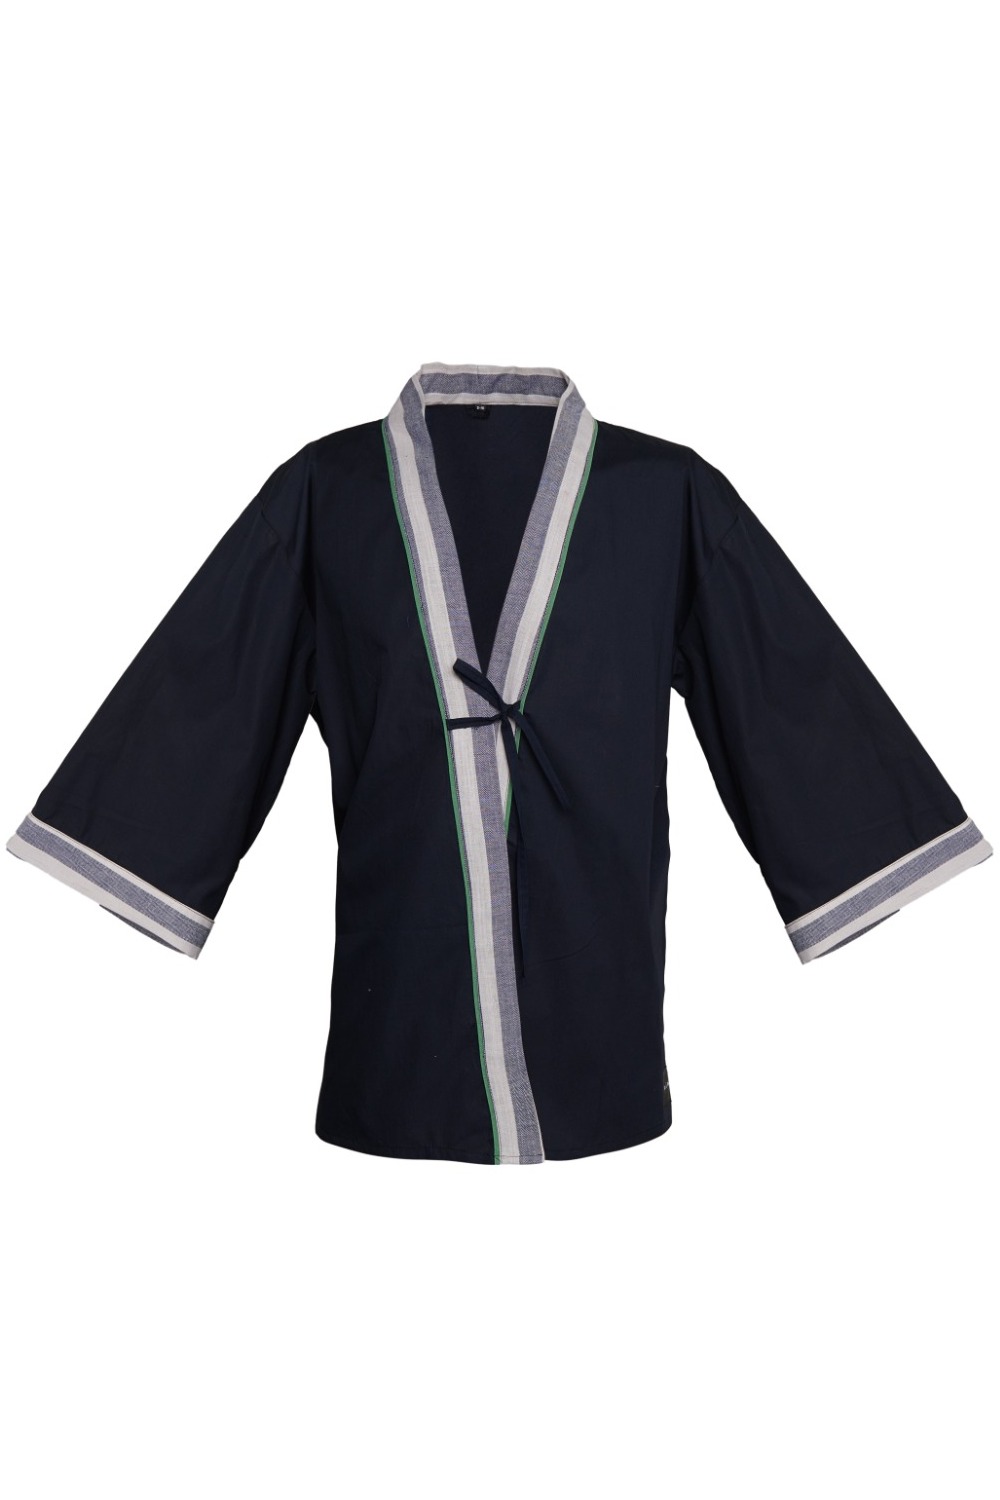 Arcadia Kimono Shirt